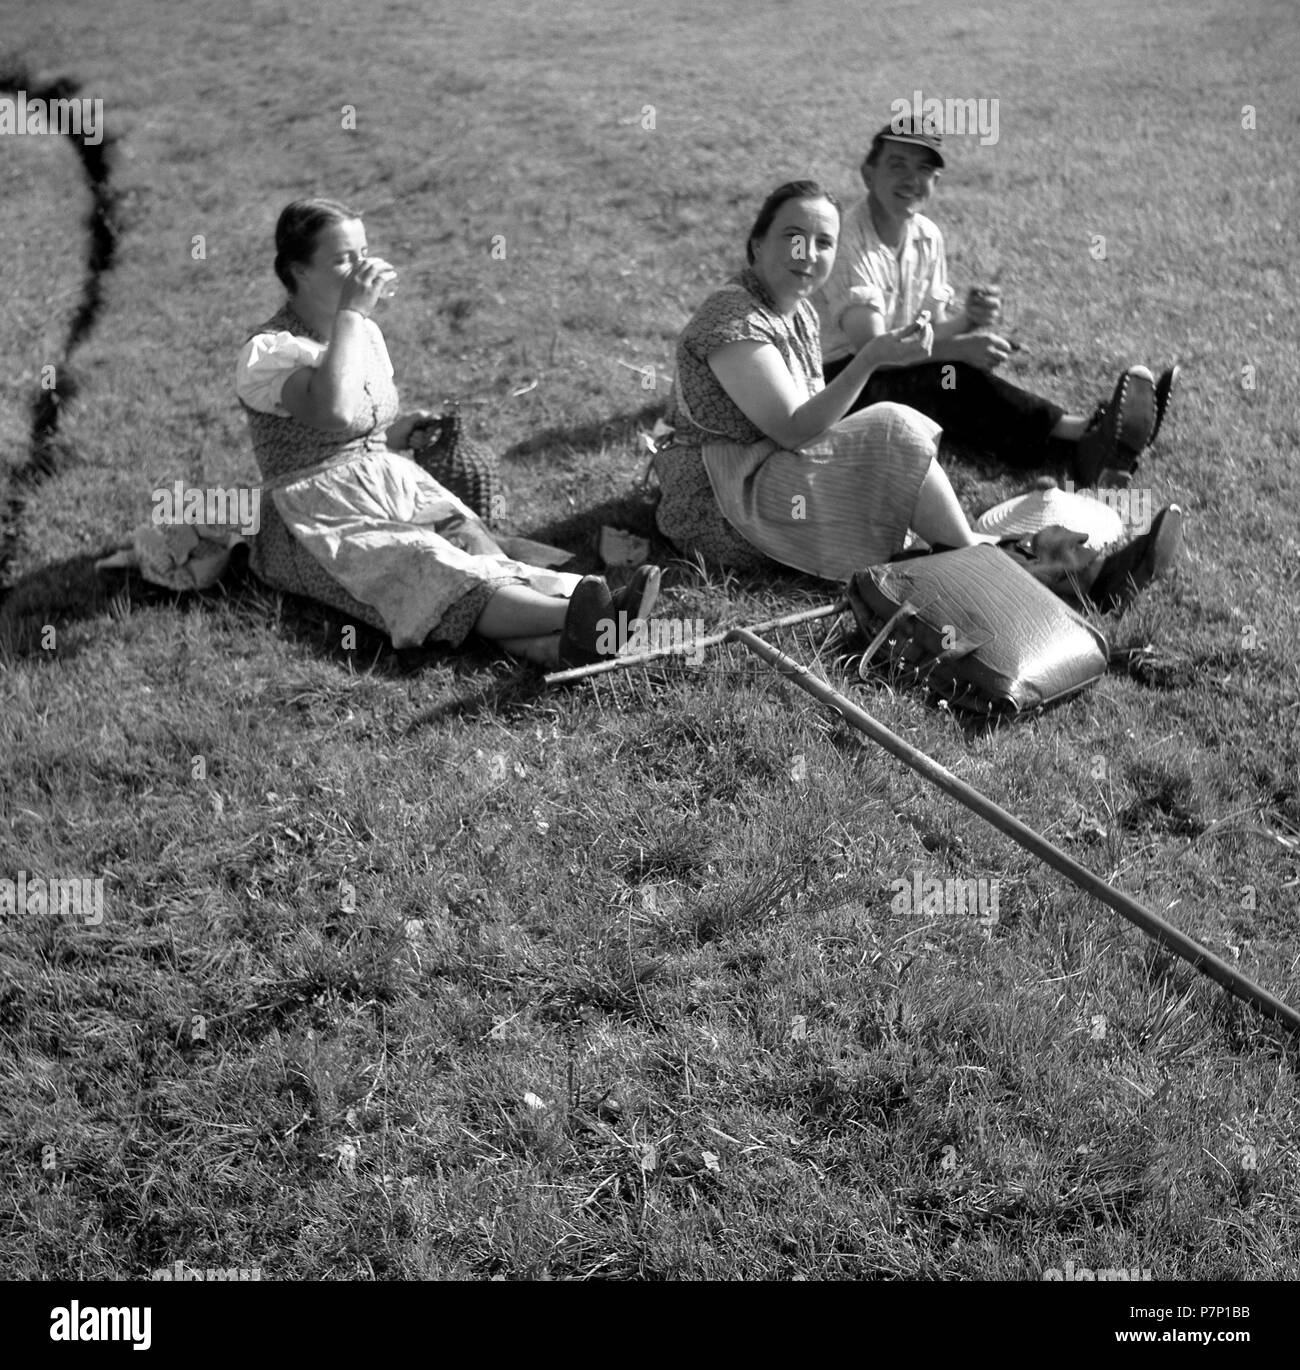 Les travailleurs de terrain de prendre une pause, de l'agriculture, ca. 1955, près de Fribourg, Allemagne Banque D'Images